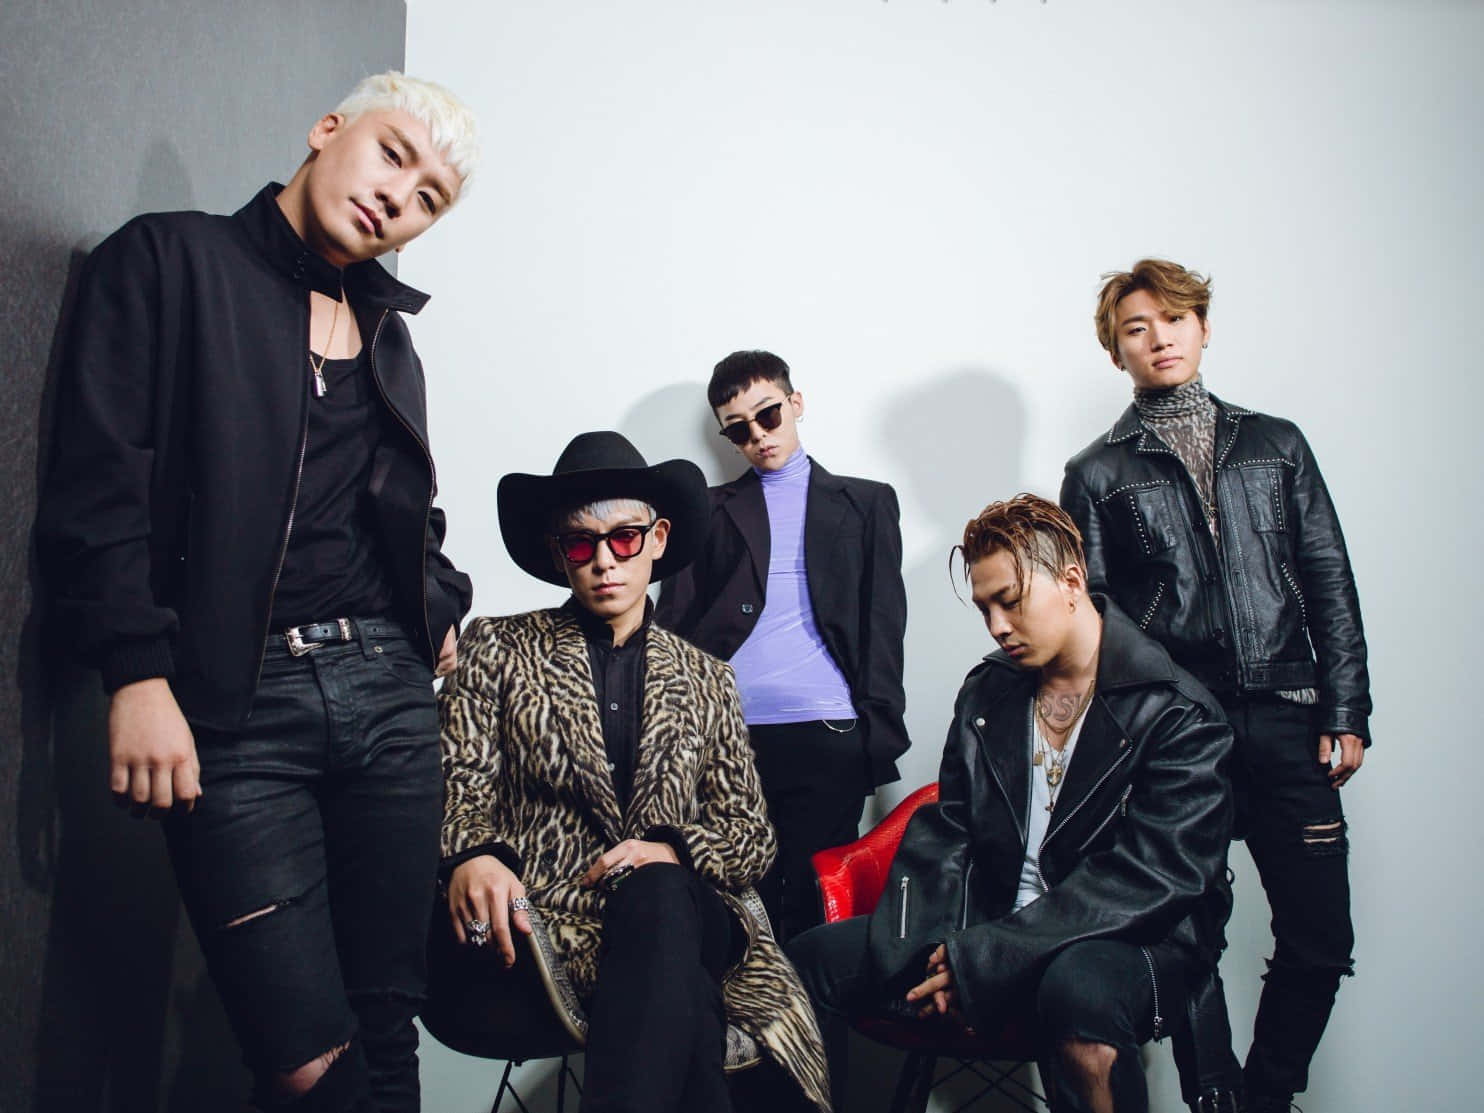 4medlemmar Av Bigbang - G-dragon, T.o.p., Taeyang Och Daesung.